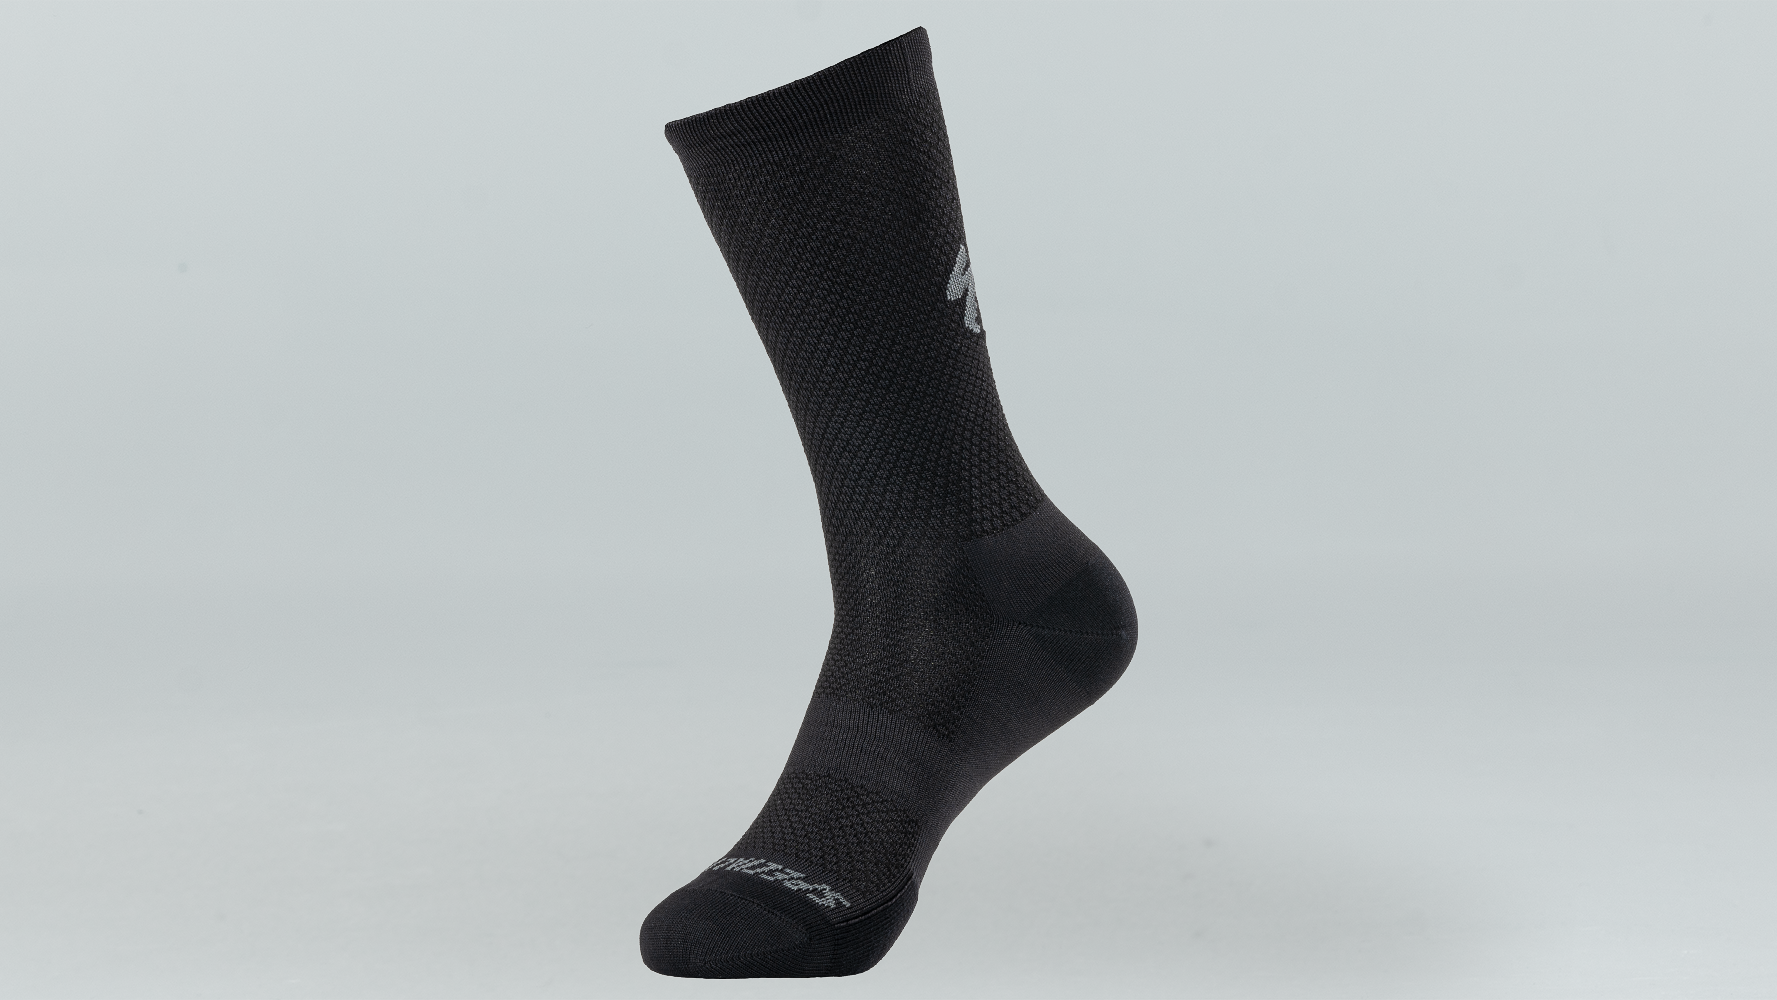 Sock Stop — Needles in the Hay